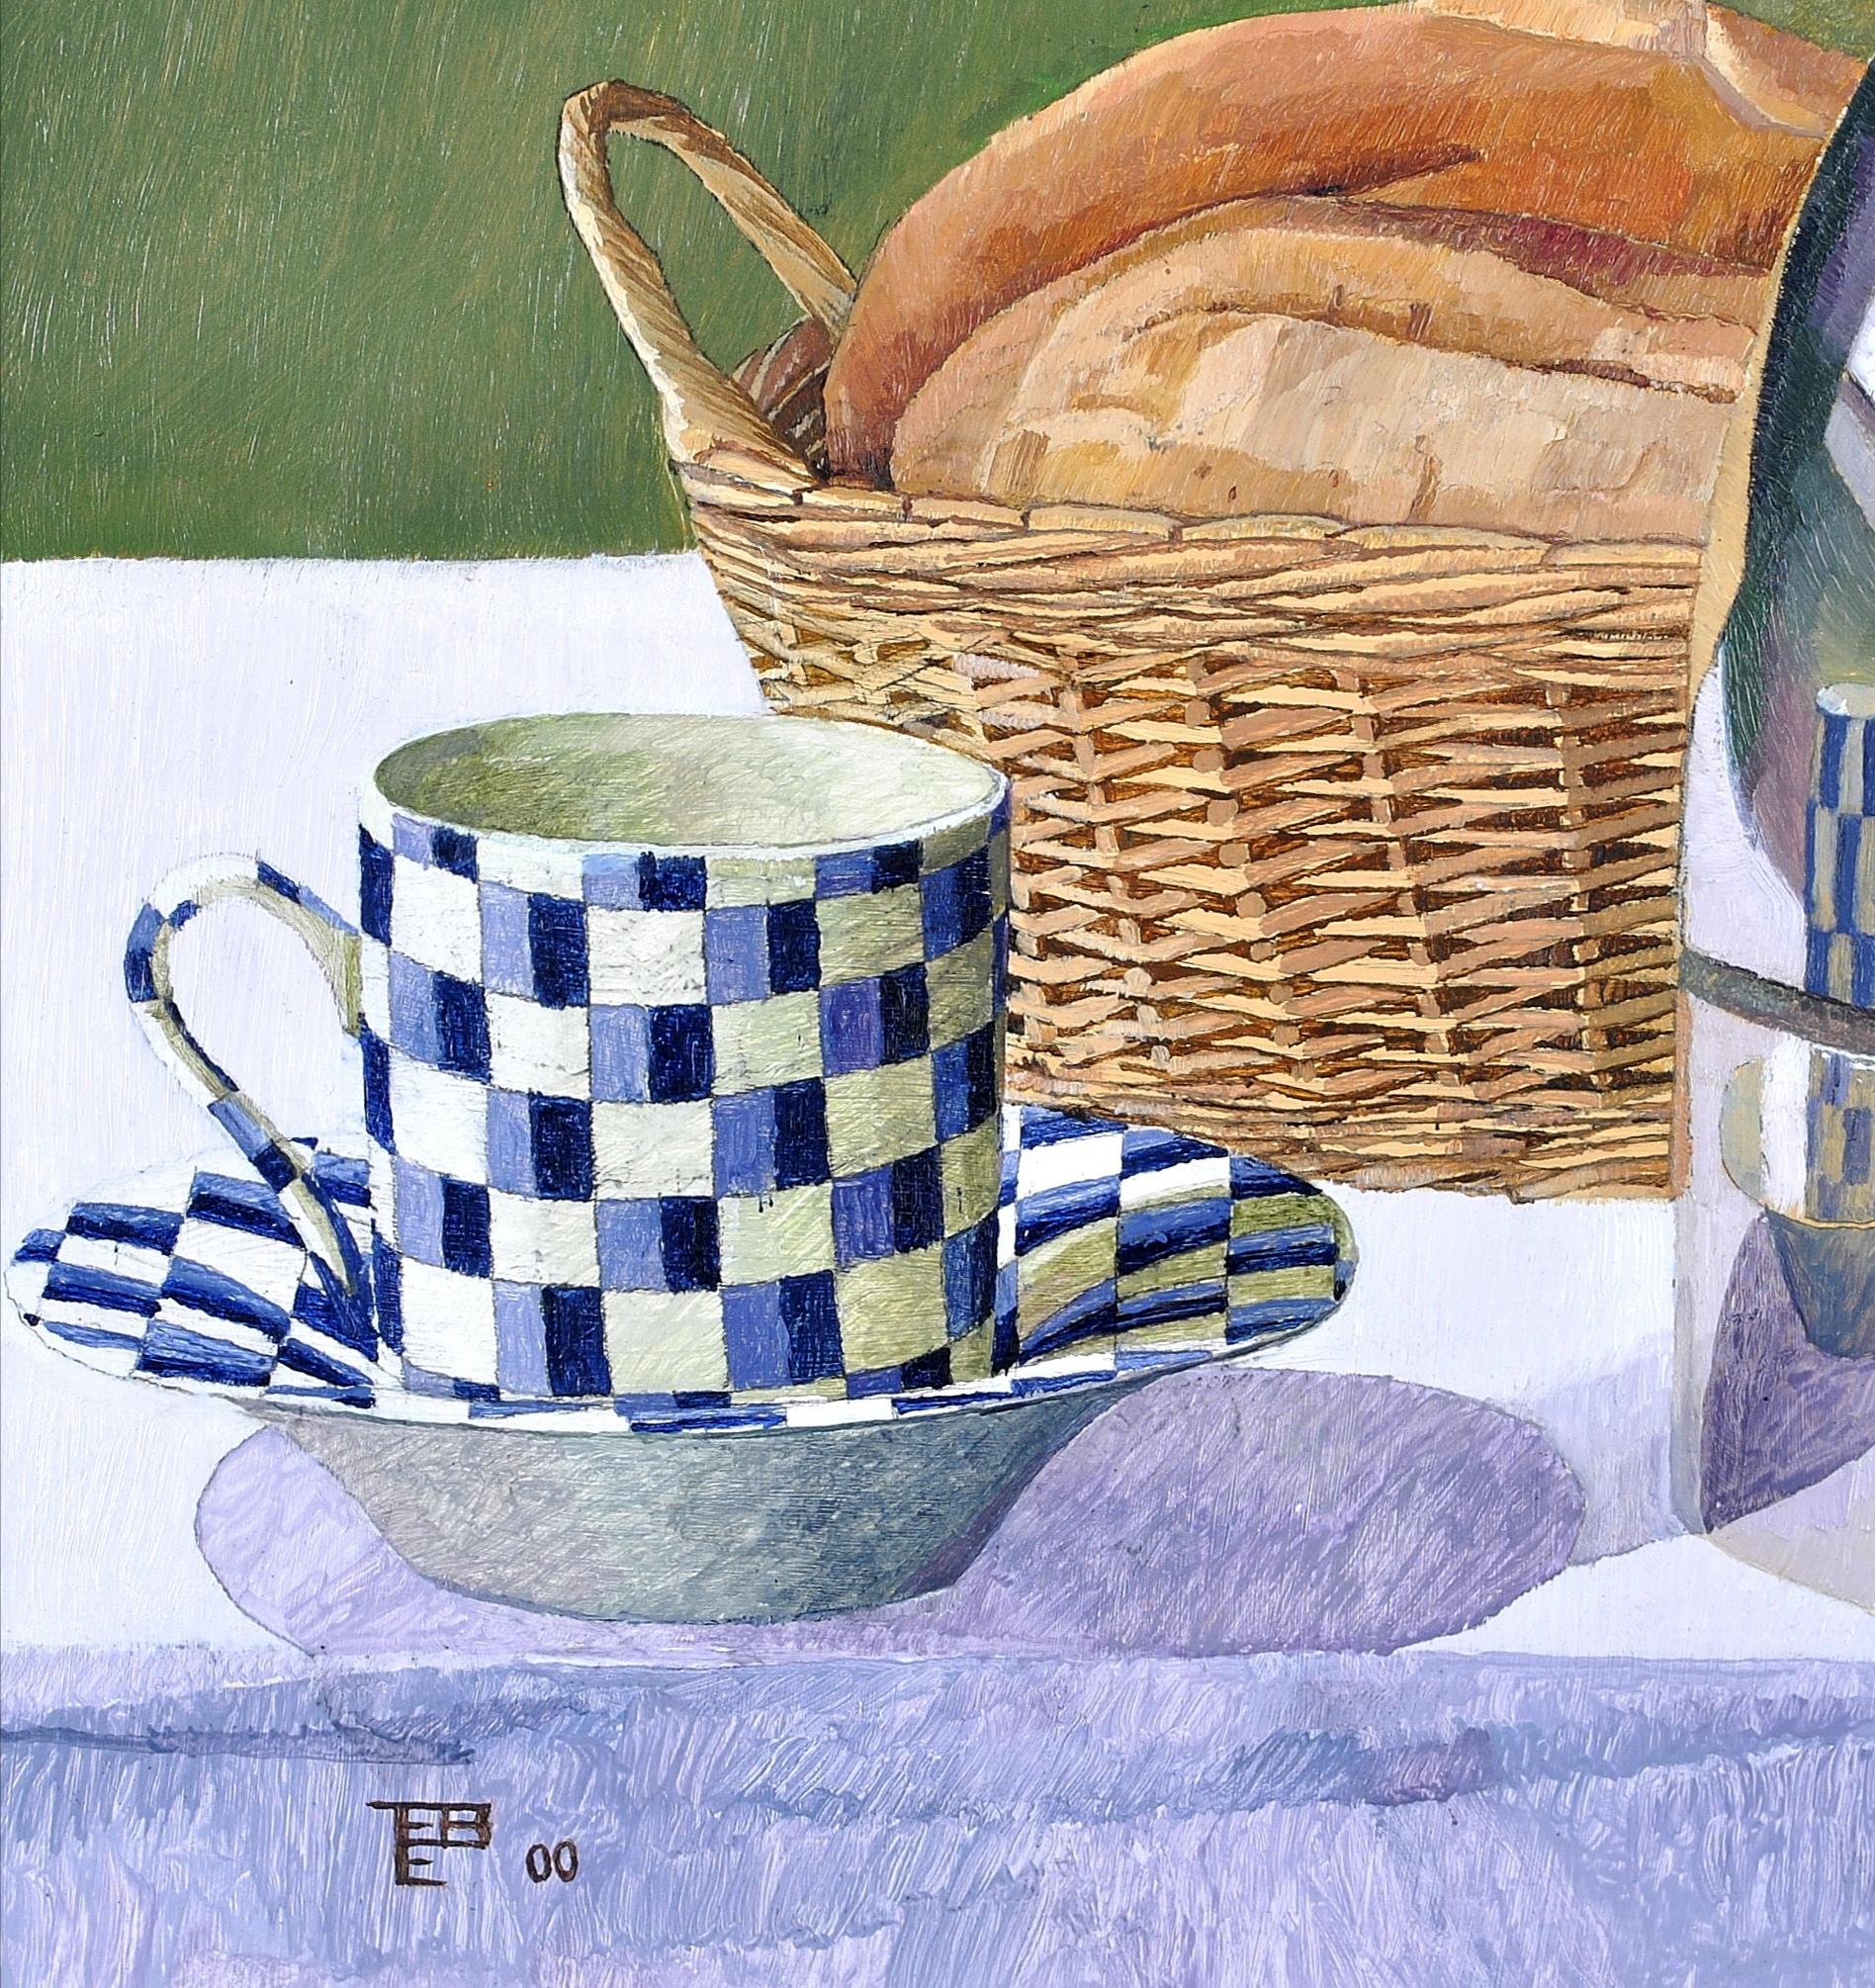 Très belle huile sur carton représentant une cafetière avec une tasse à café et un panier de pain, par Tom Elliotts. 

Peinture d'excellente qualité et inhabituelle, avec l'artiste se reflétant dans la cafetière. Signée avec monogramme et datée 2000